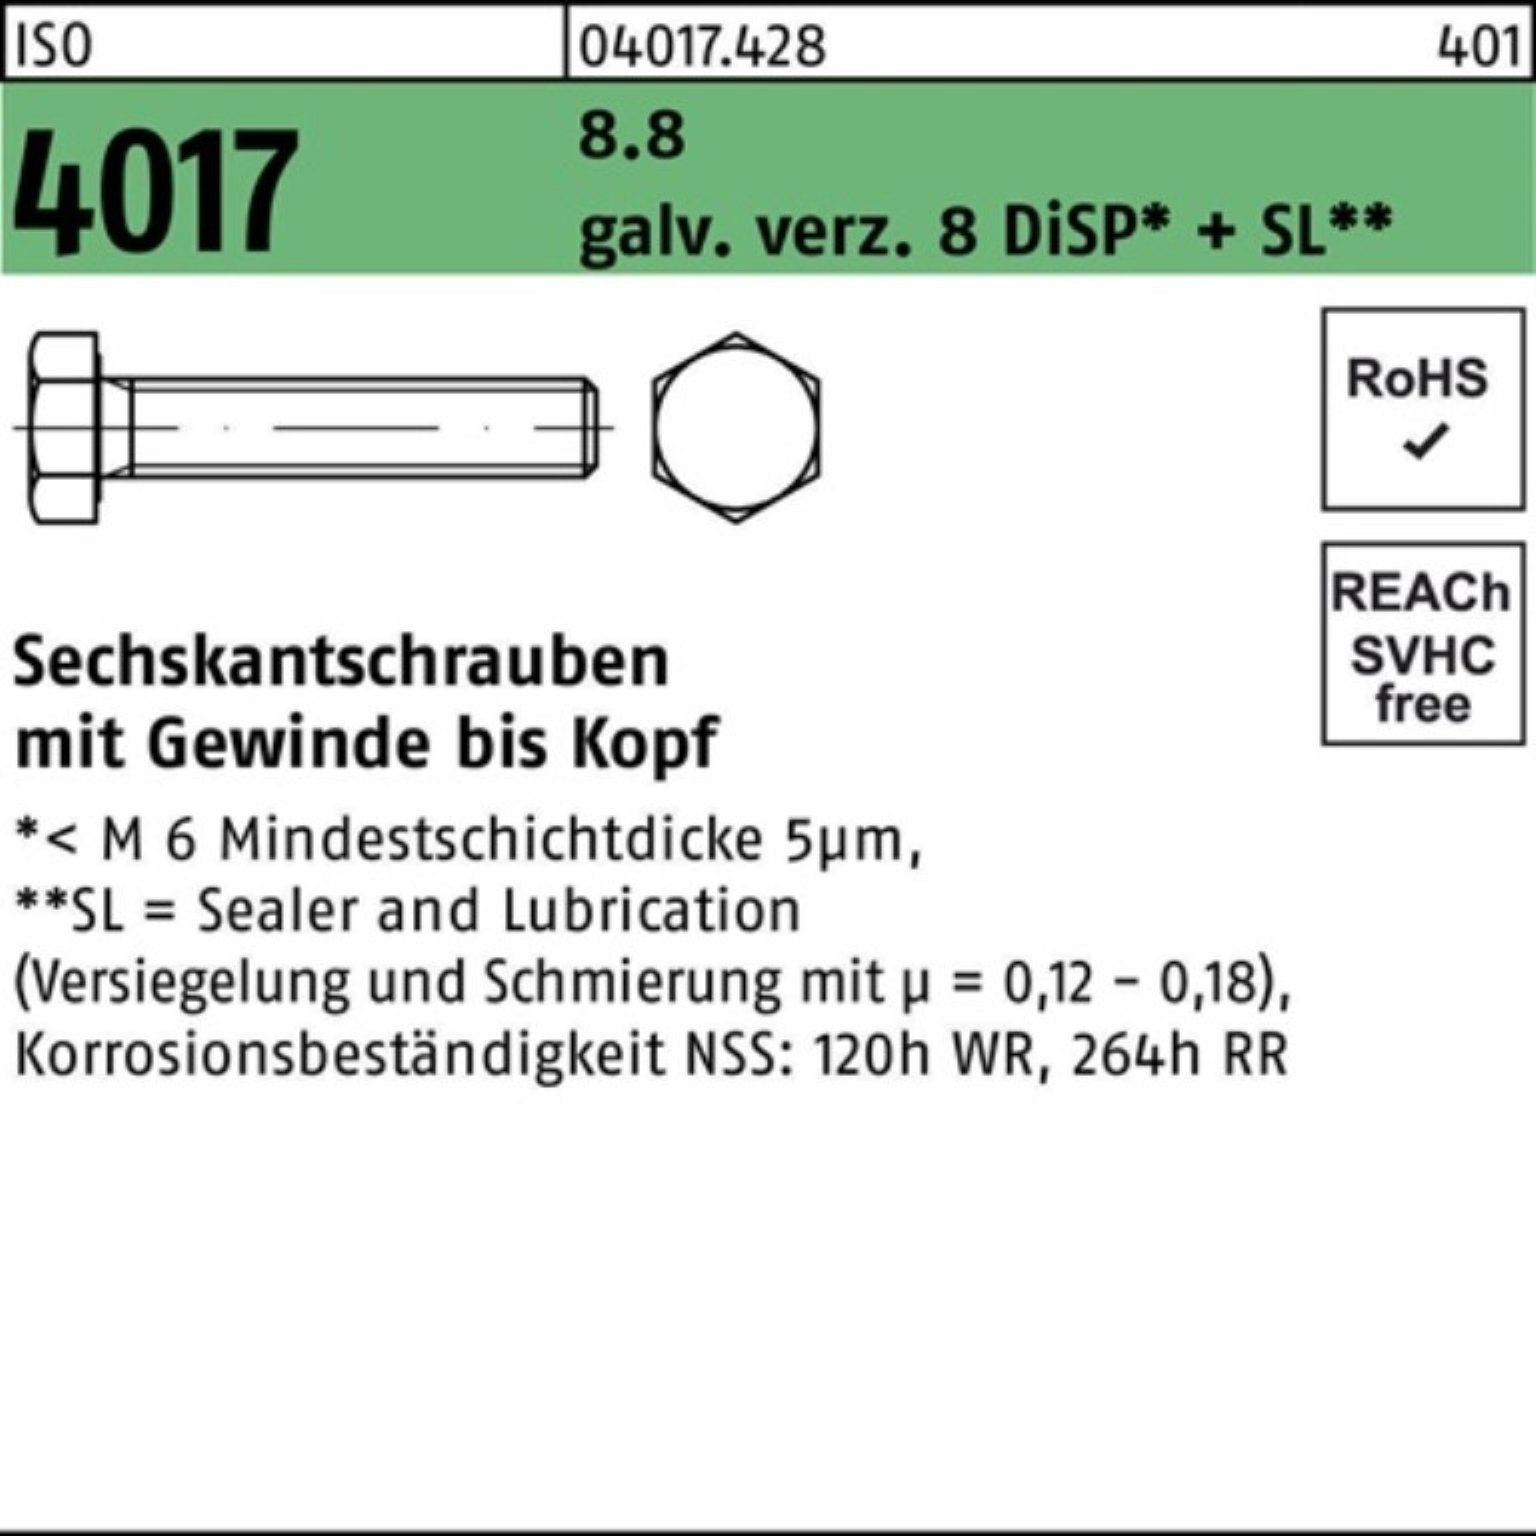 Bufab 500er Pack DiSP+S M4x Sechskantschraube 8 Sechskantschraube 4017 8 8.8 galv.verz. ISO VG